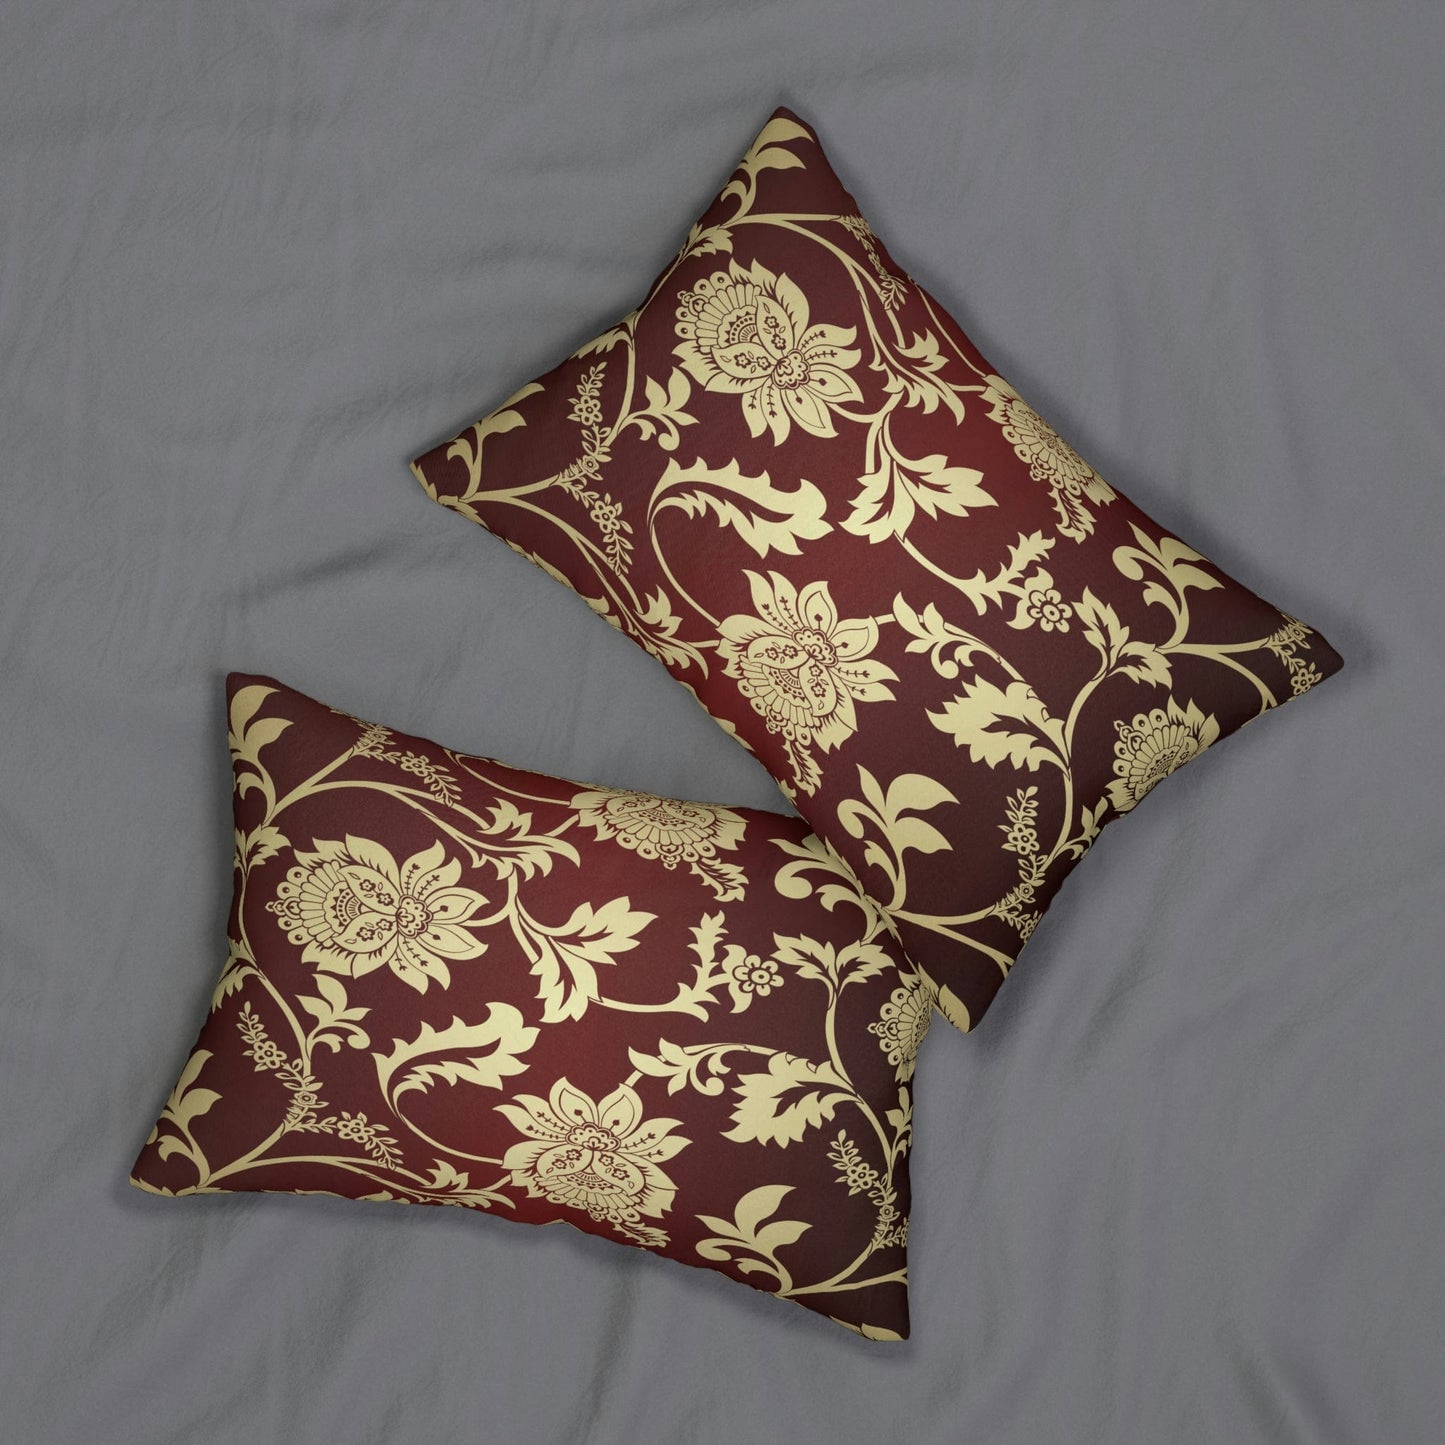 Kate McEnroe New York Lumbar Pillow in Traditional Indian Floral Paisley Lumbar Pillows 20" × 14" 13513630307199604862